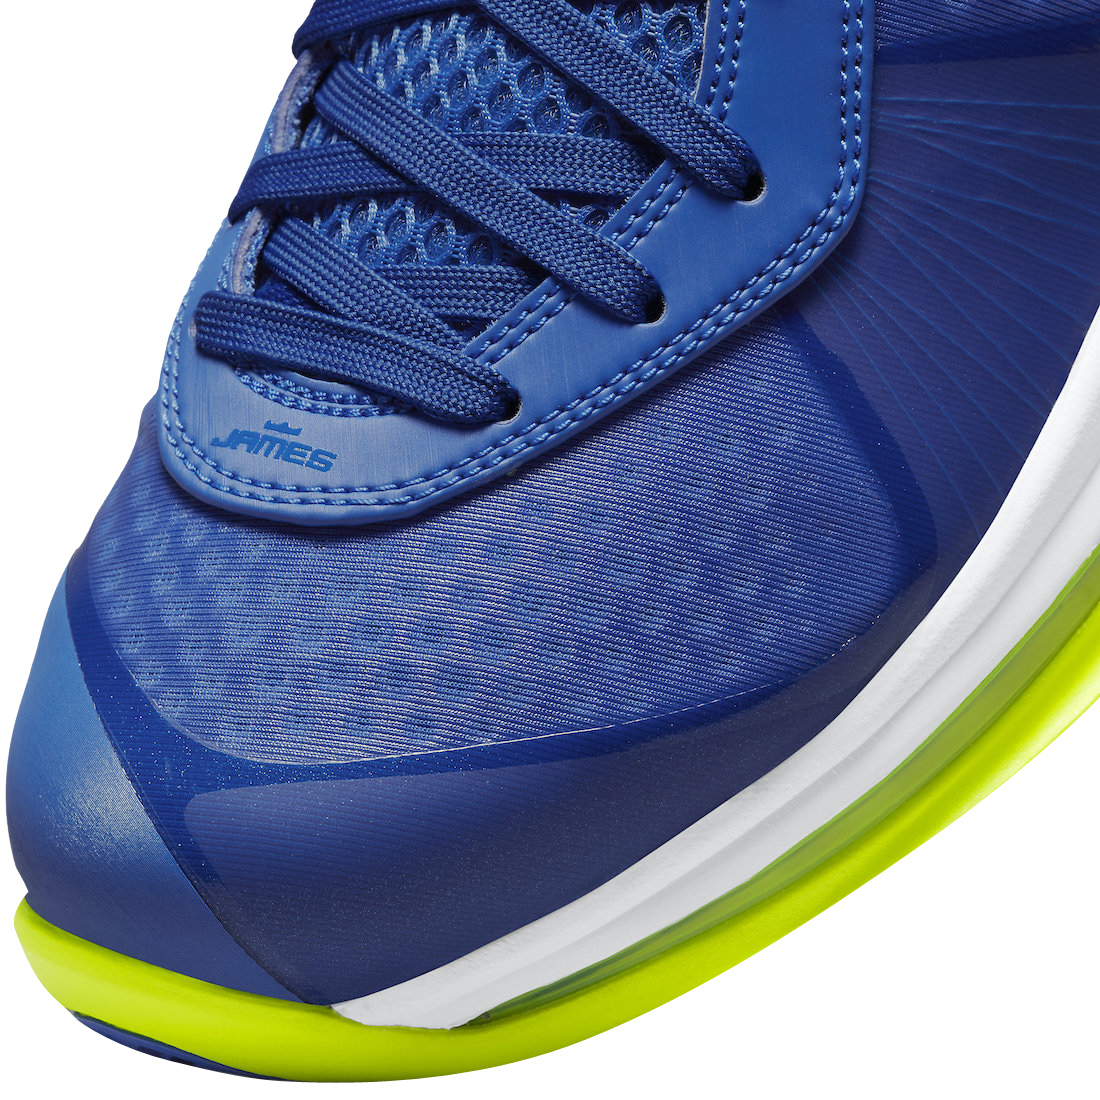 Nike LeBron 8 V2 Low Sprite 2021 DN1581-400 - KicksOnFire.com